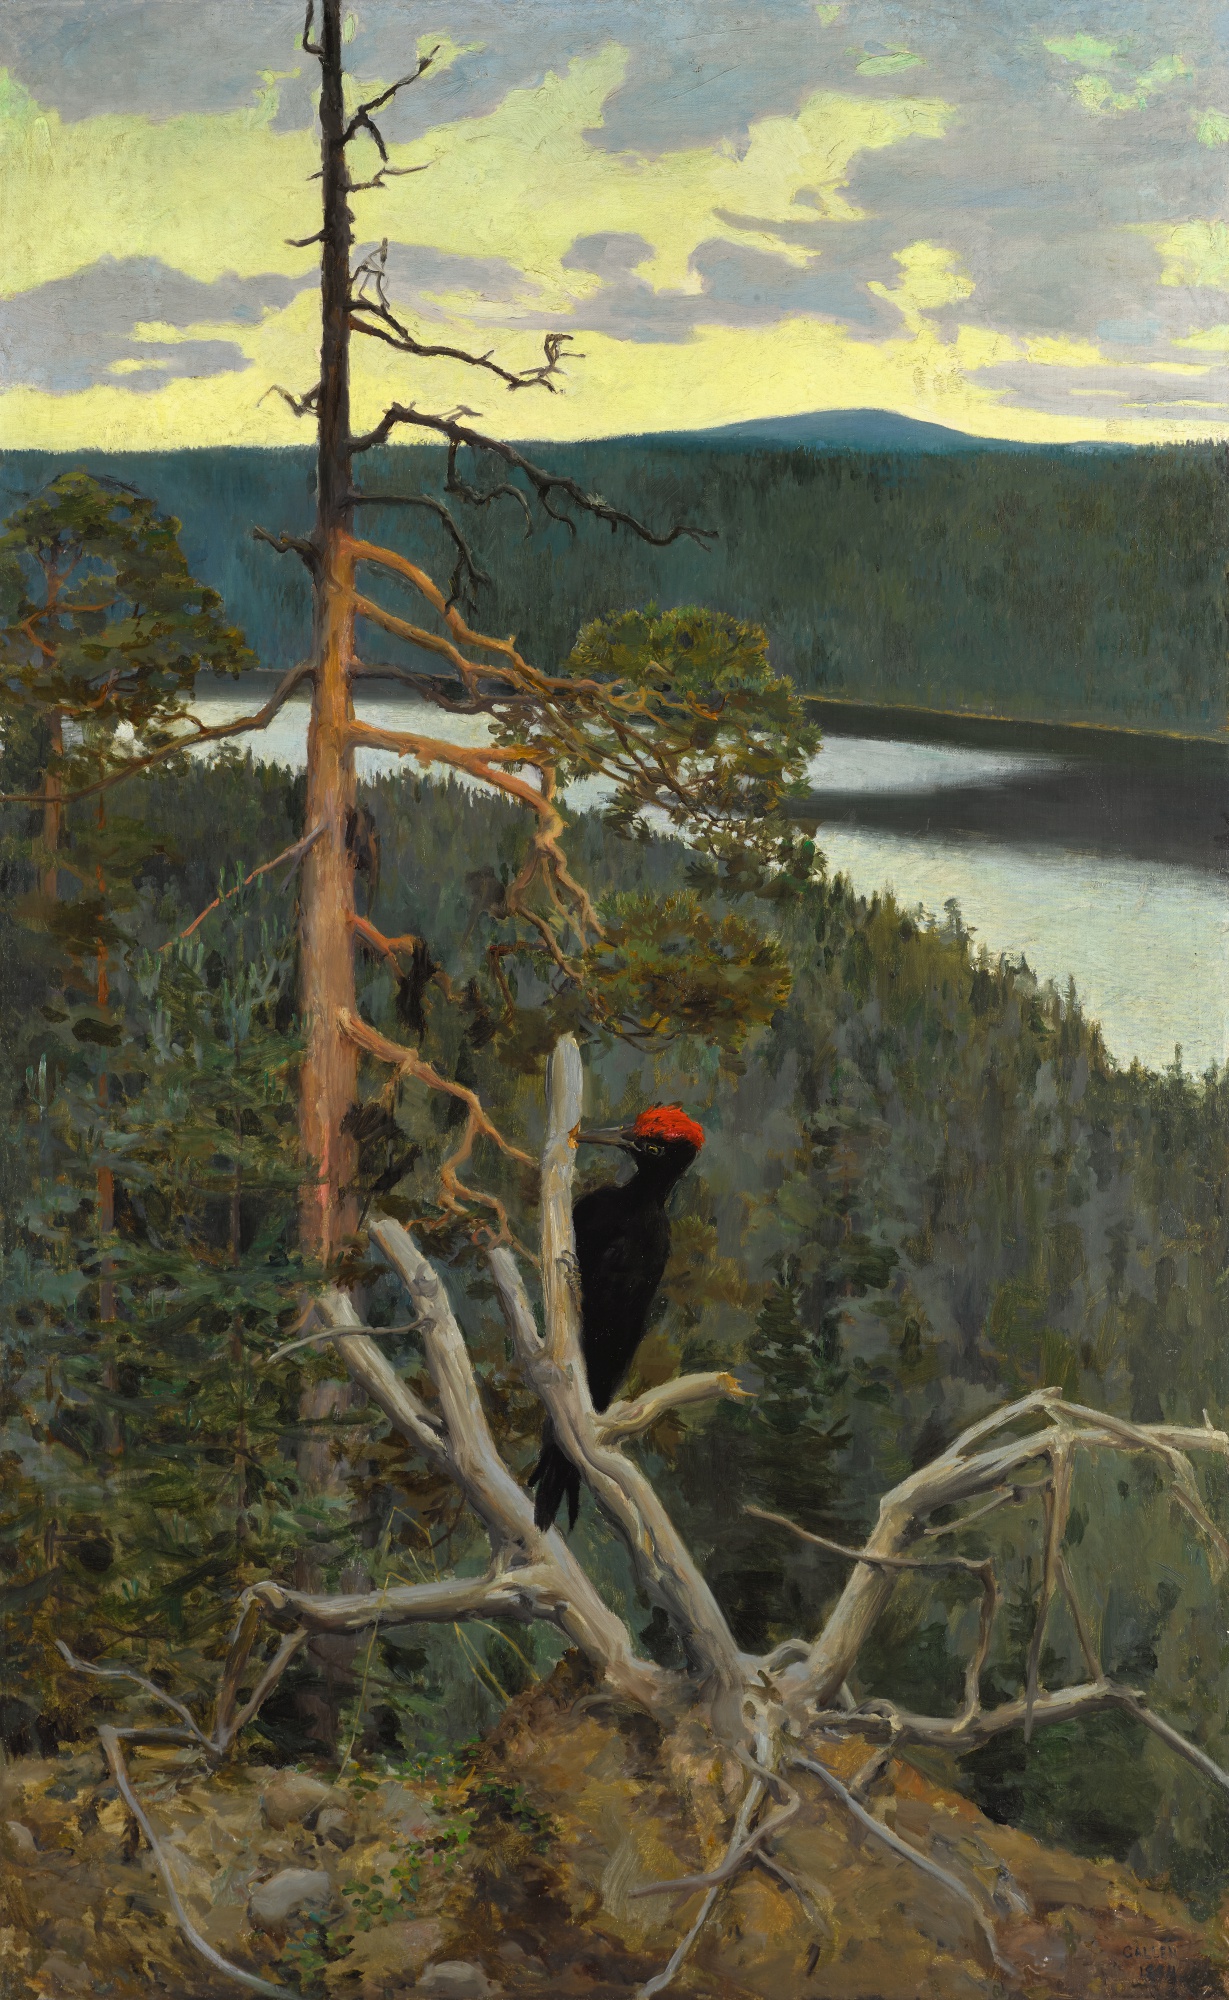 クマゲラ by Akseli Gallen-Kallela - 1894年 - 145 x 91 cm 